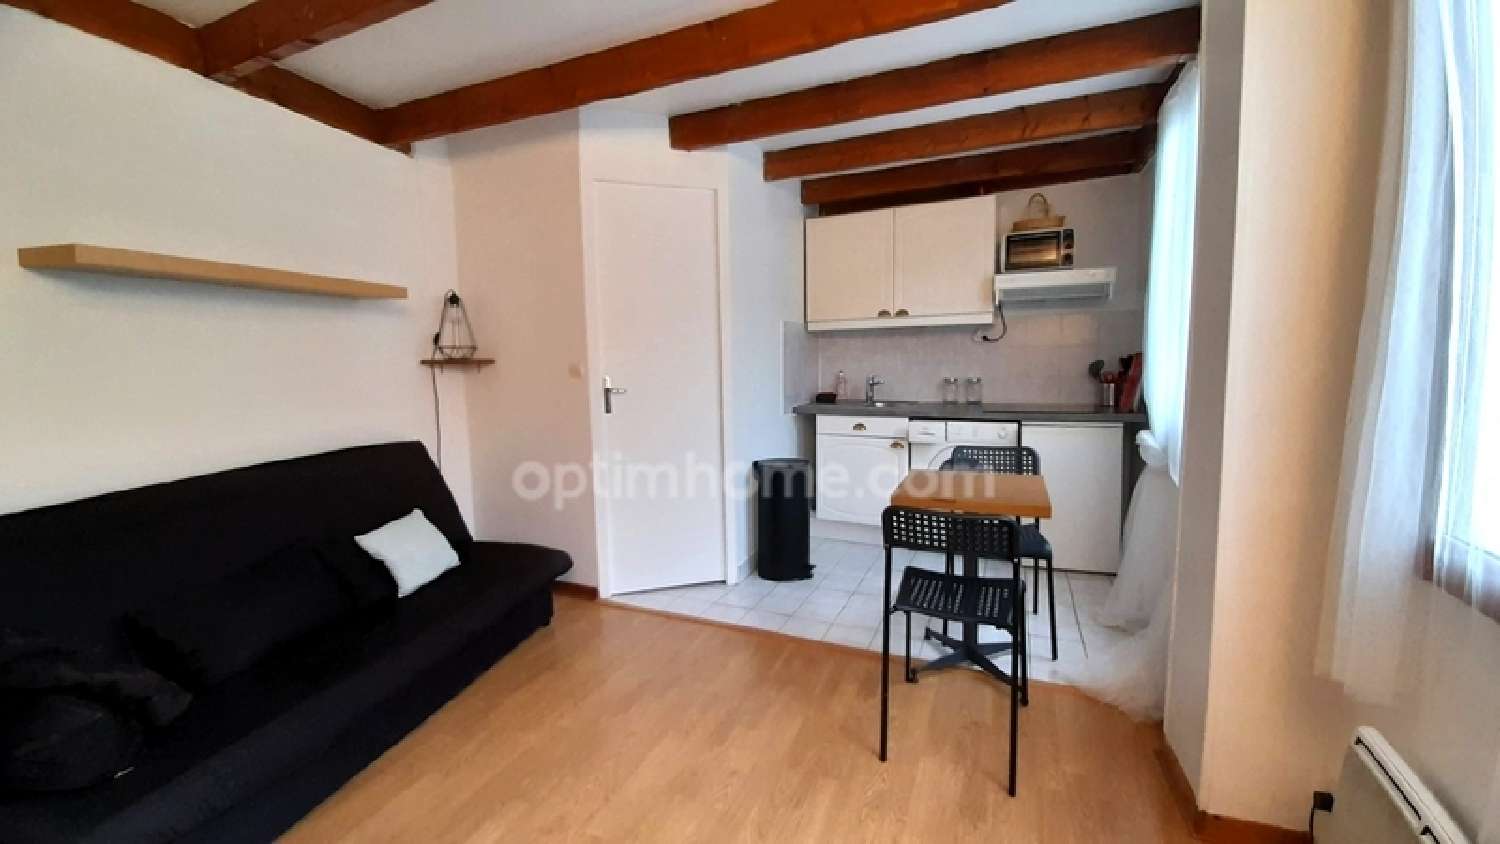  for sale apartment Villejuif Val-de-Marne 2